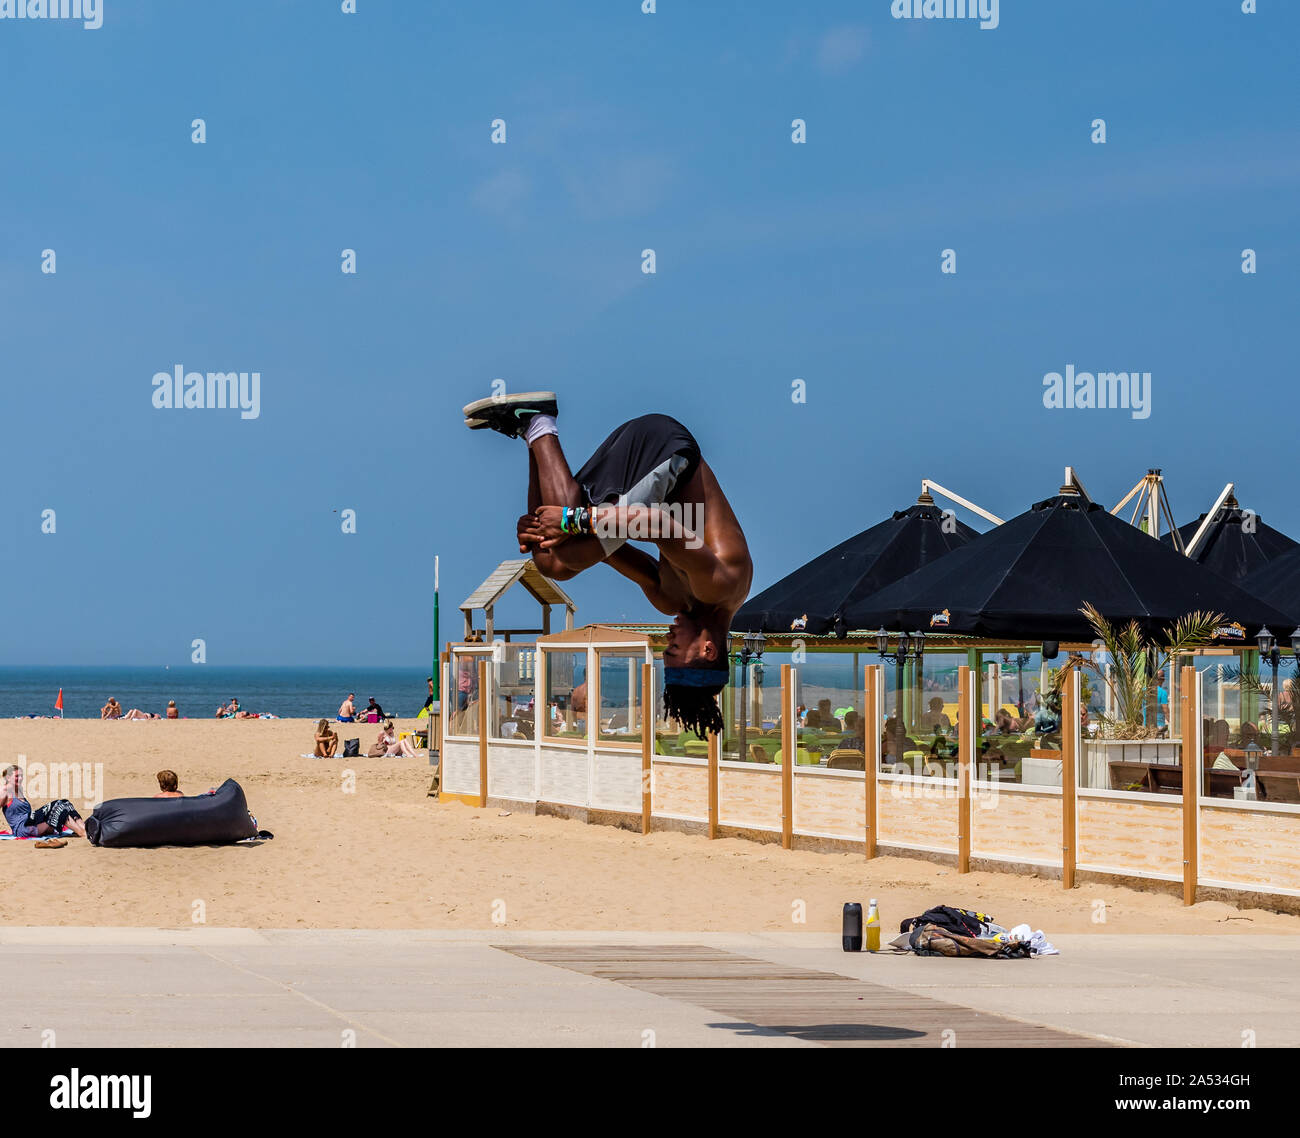 Den Haag Holland kann Street 2018 spiegeln Jungen auf dem Boulevard an der Nordsee strand Umklappen springen mit keine Hände Stockfoto